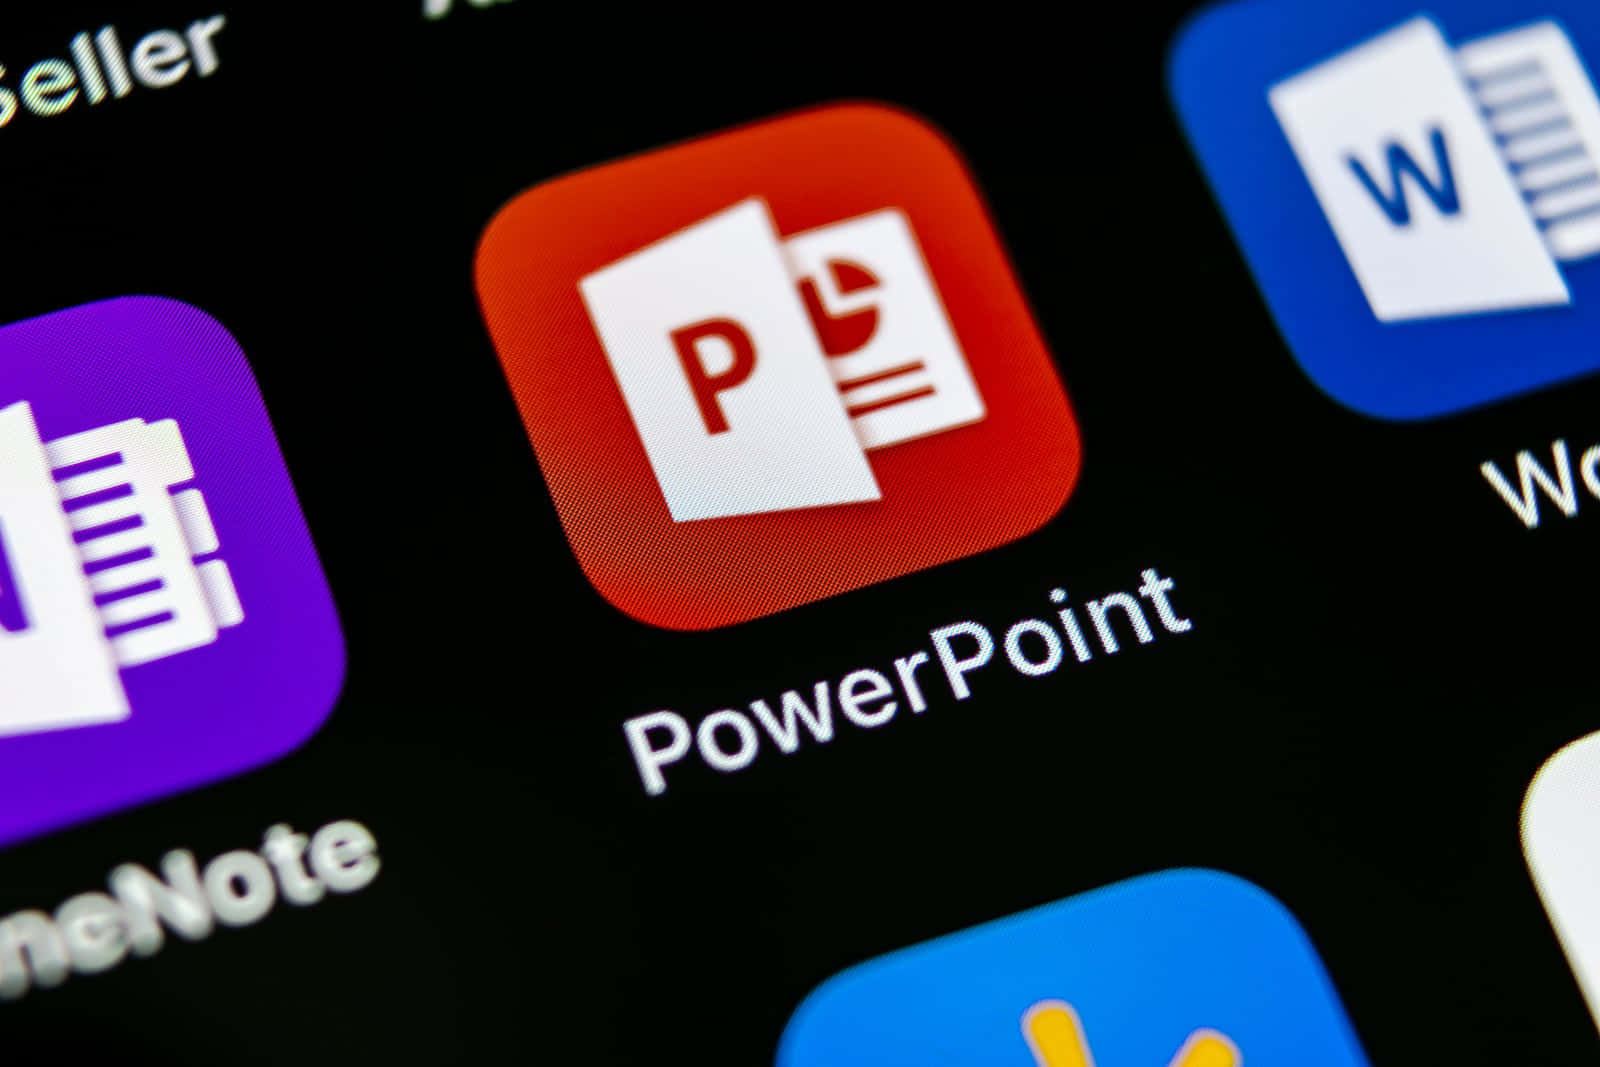 Powerpointappikoner På En Smartphone